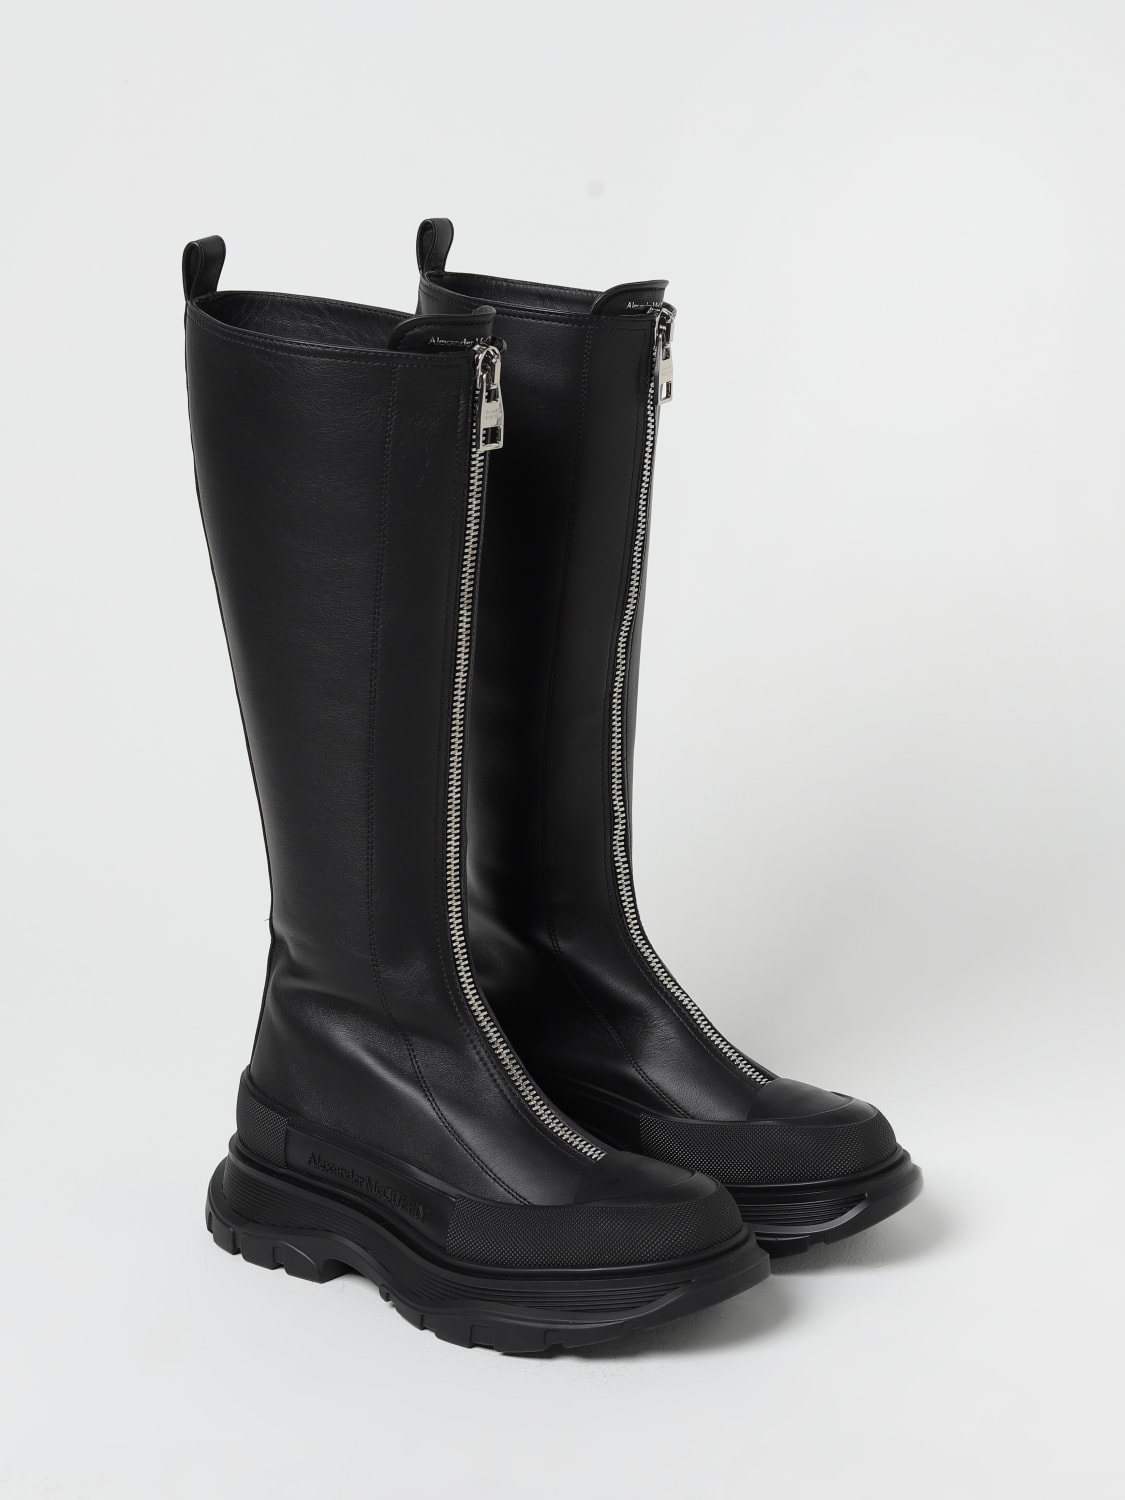 Alexander Tread Slick McQueen leather boots with zip